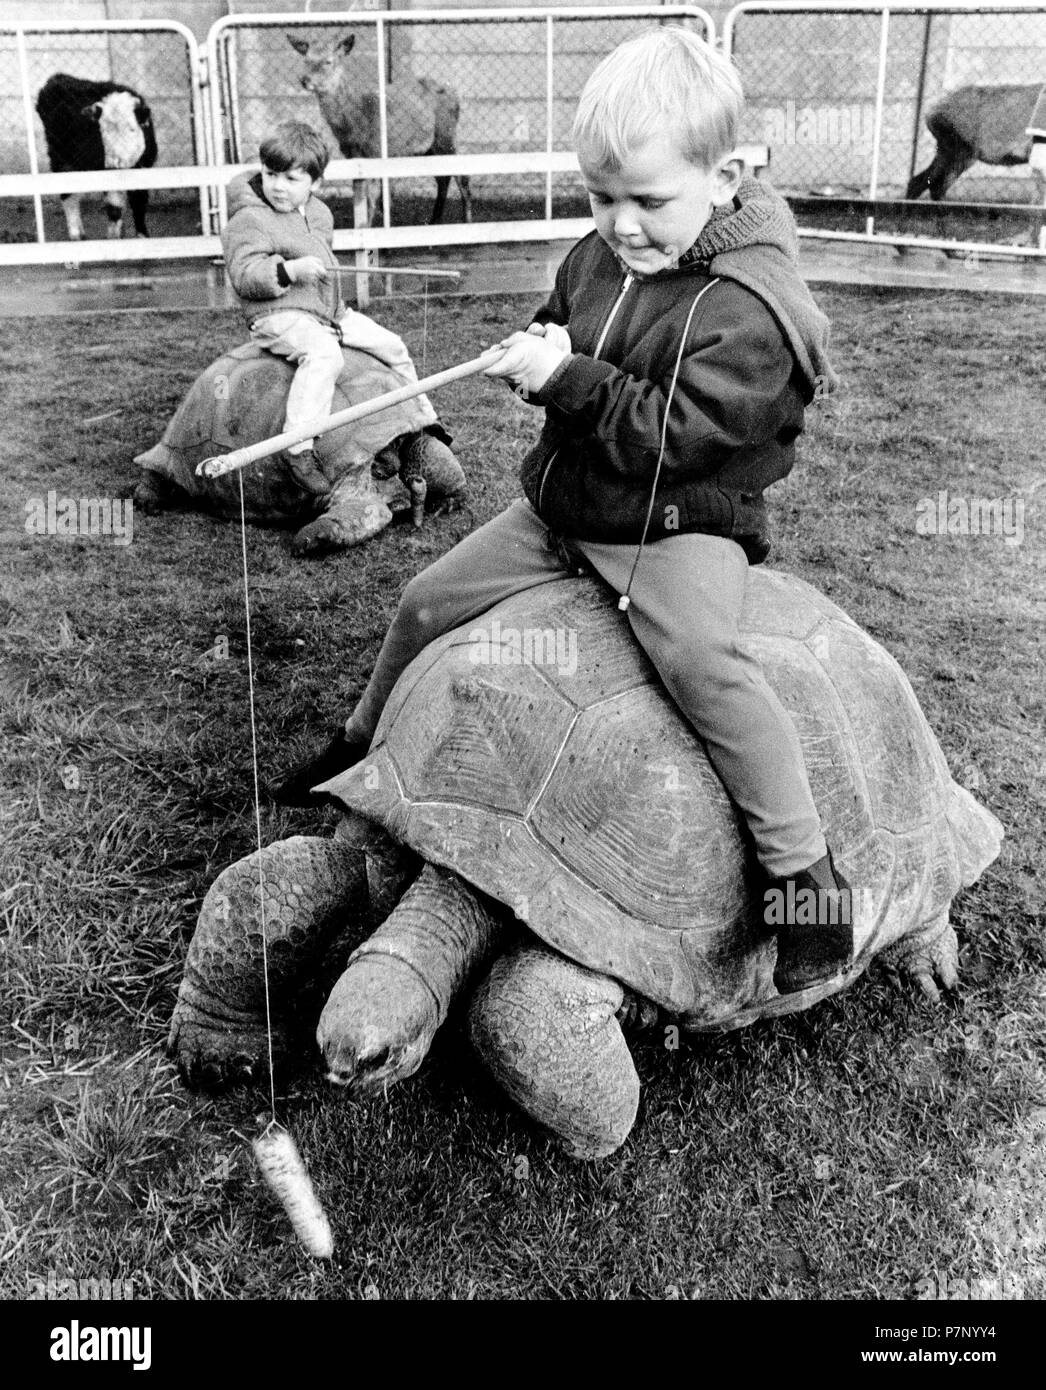 Genre se déplace sur une tortue géante, Angleterre, Grande-Bretagne Banque D'Images